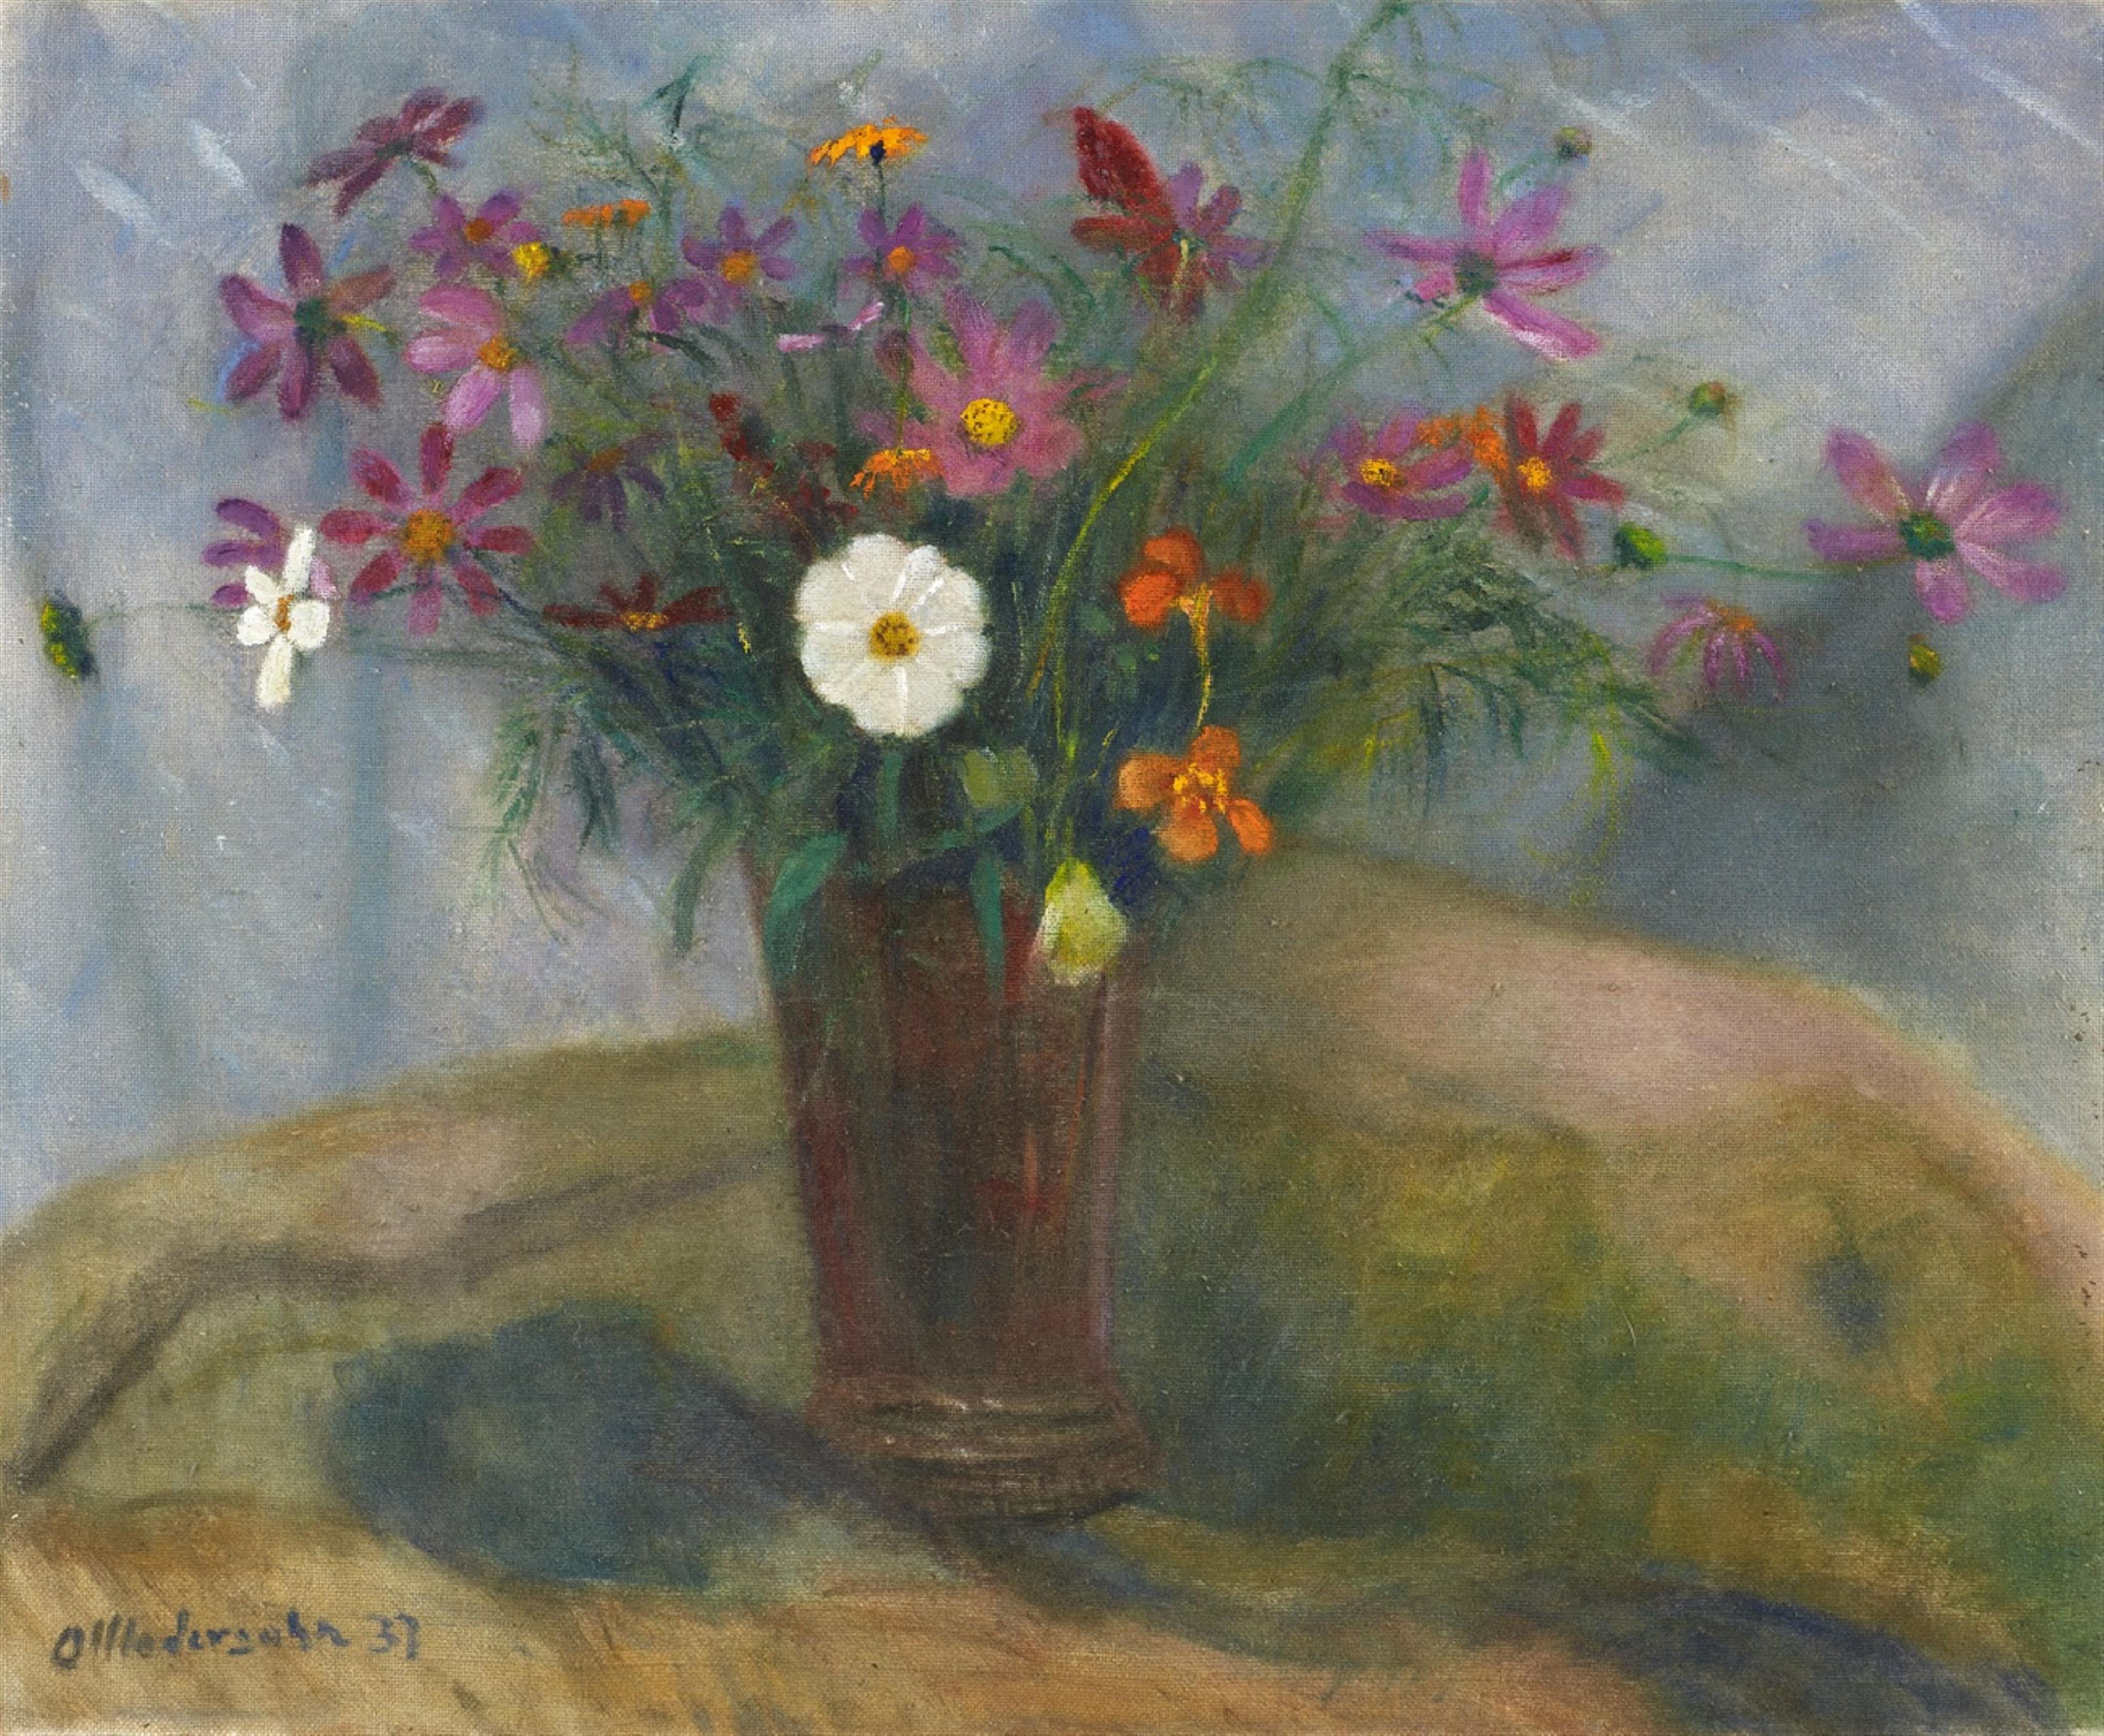 Otto Modersohn - Blumenstrauß in roter Vase mit weißer Herbstanemone - image-1